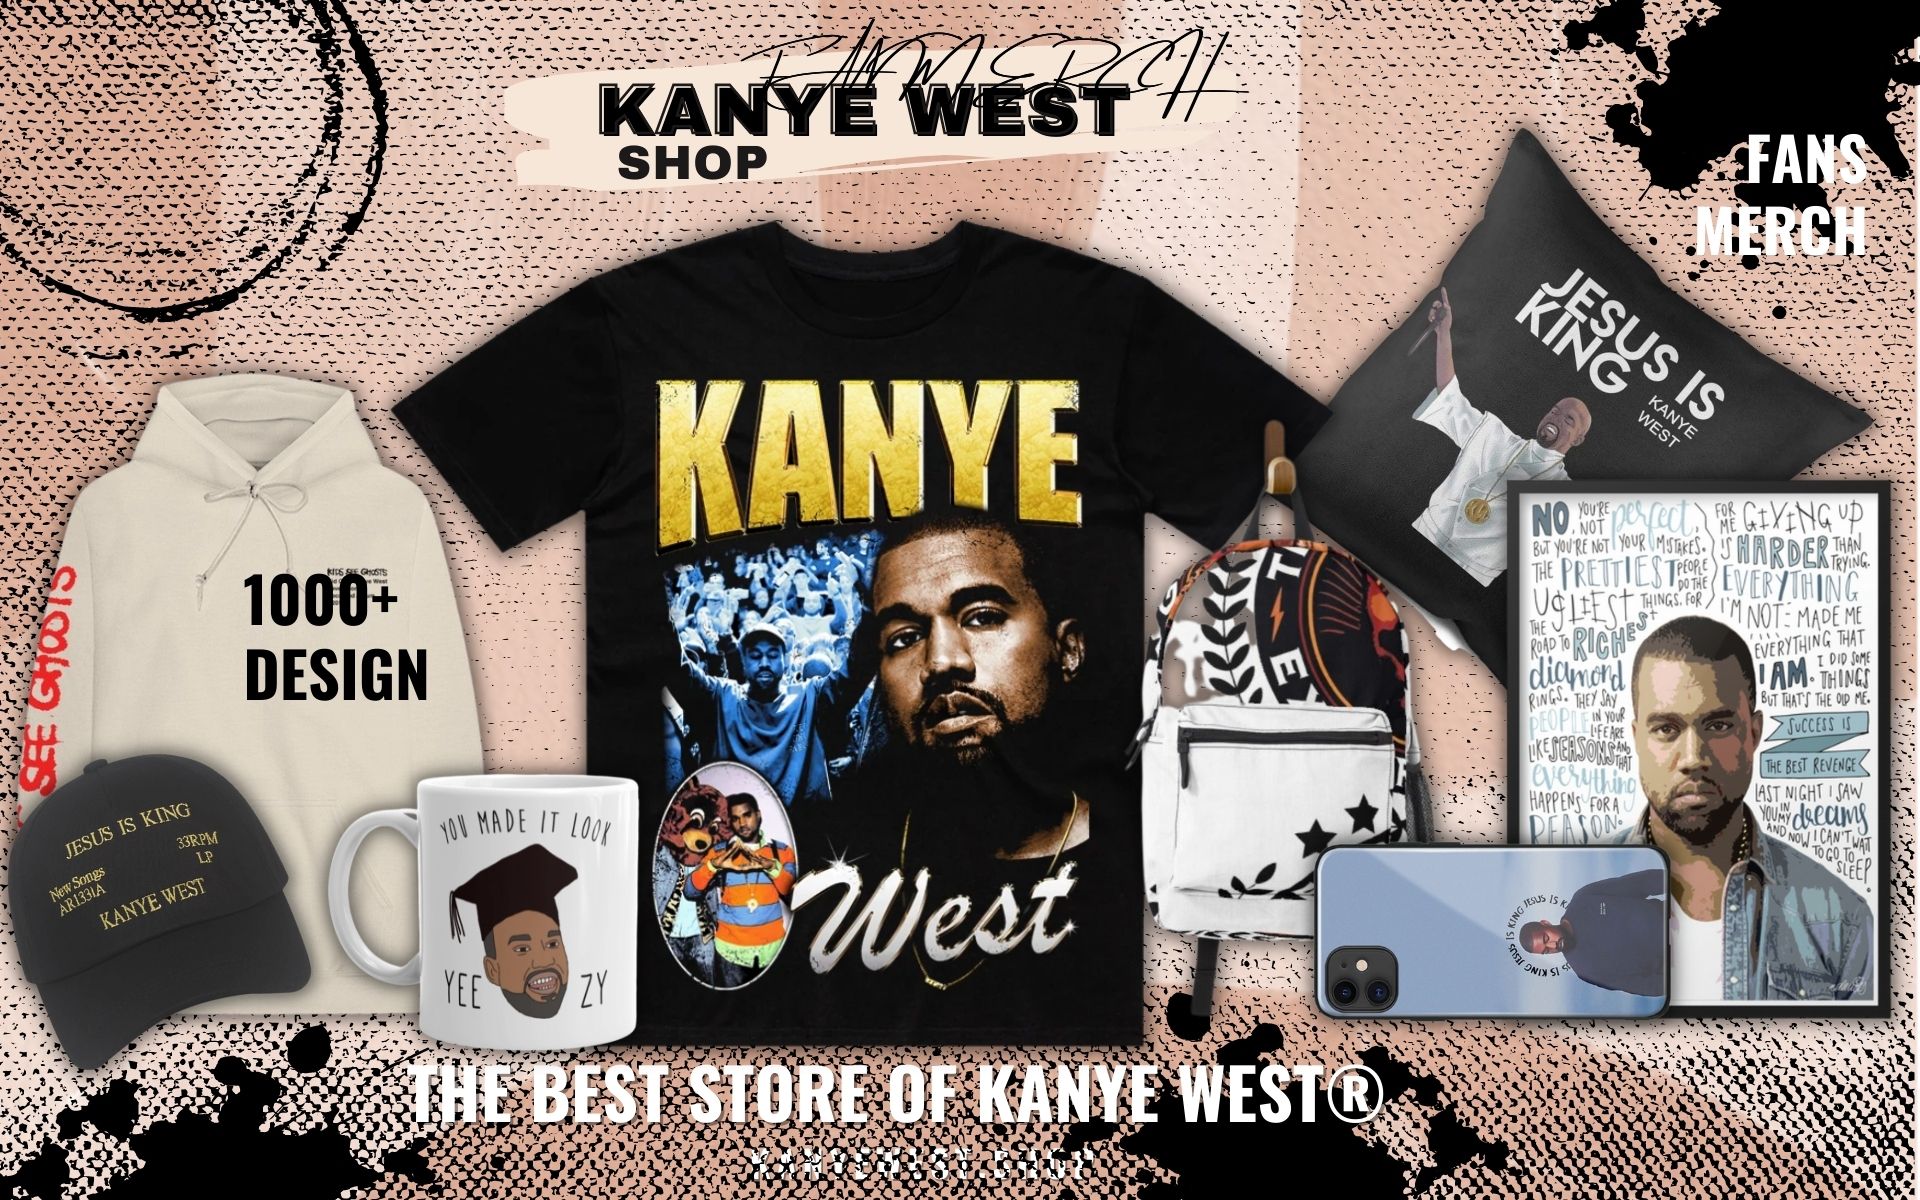 KANYE WEST Shop Web Banner - Kanye West Shop